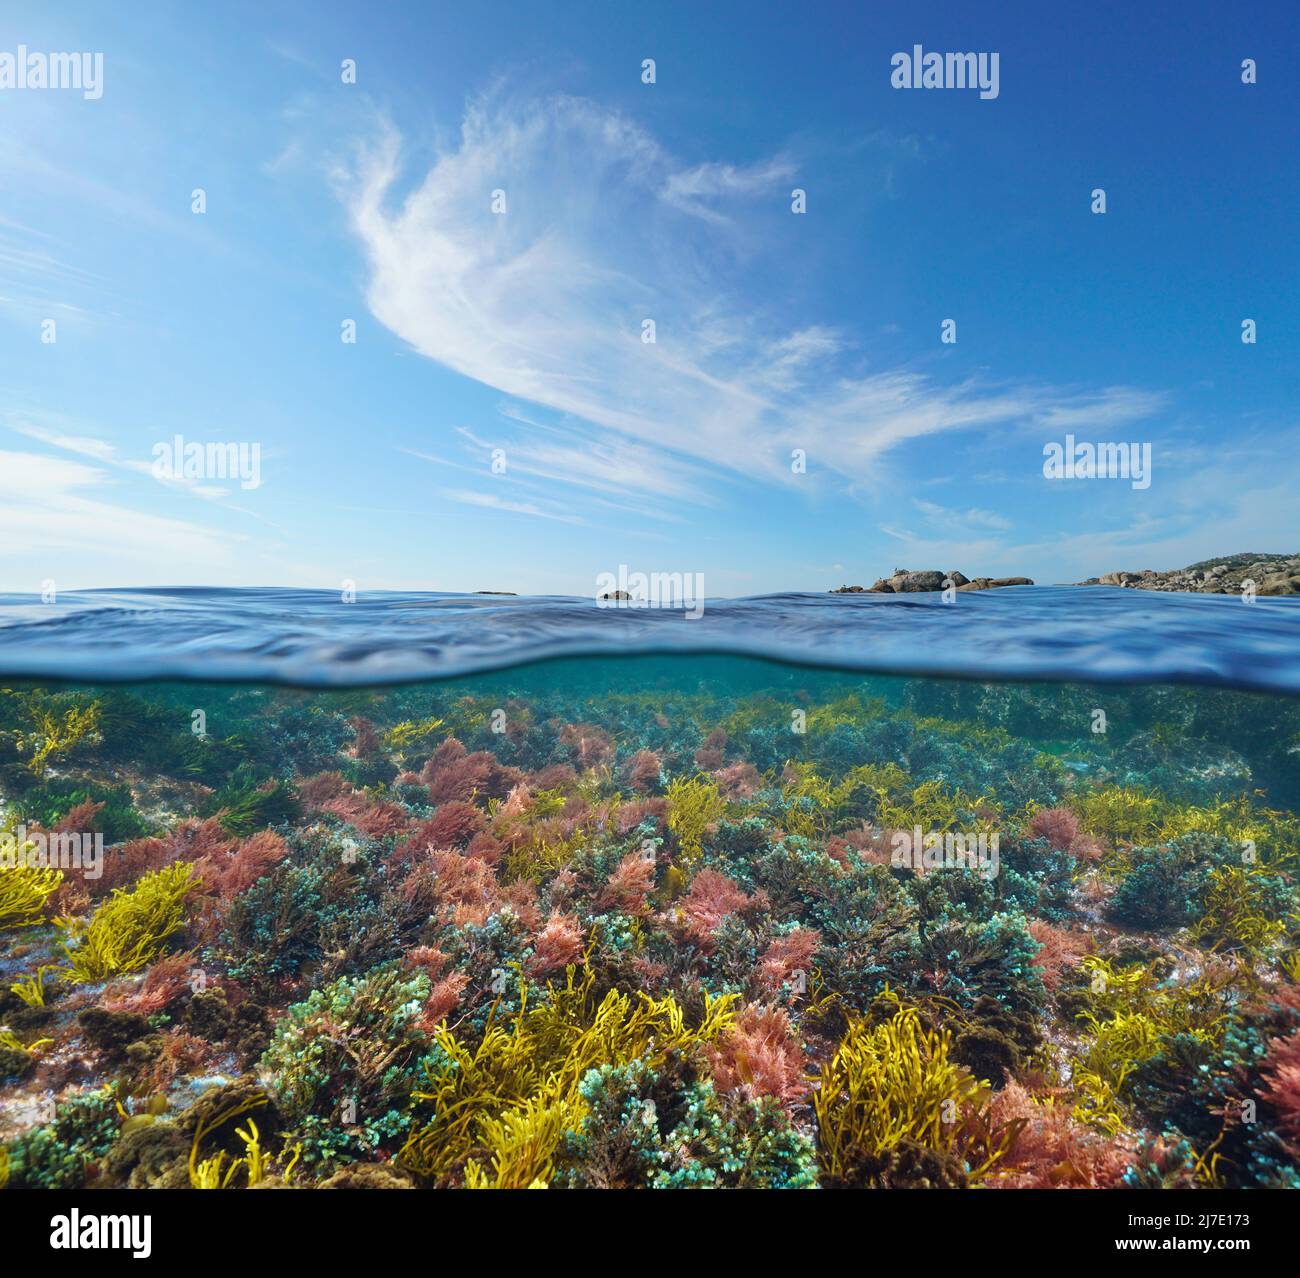 Paysage marin, algues colorées sous l'eau et ciel bleu avec nuage, vue sur et sous la surface de l'eau, océan Atlantique Banque D'Images